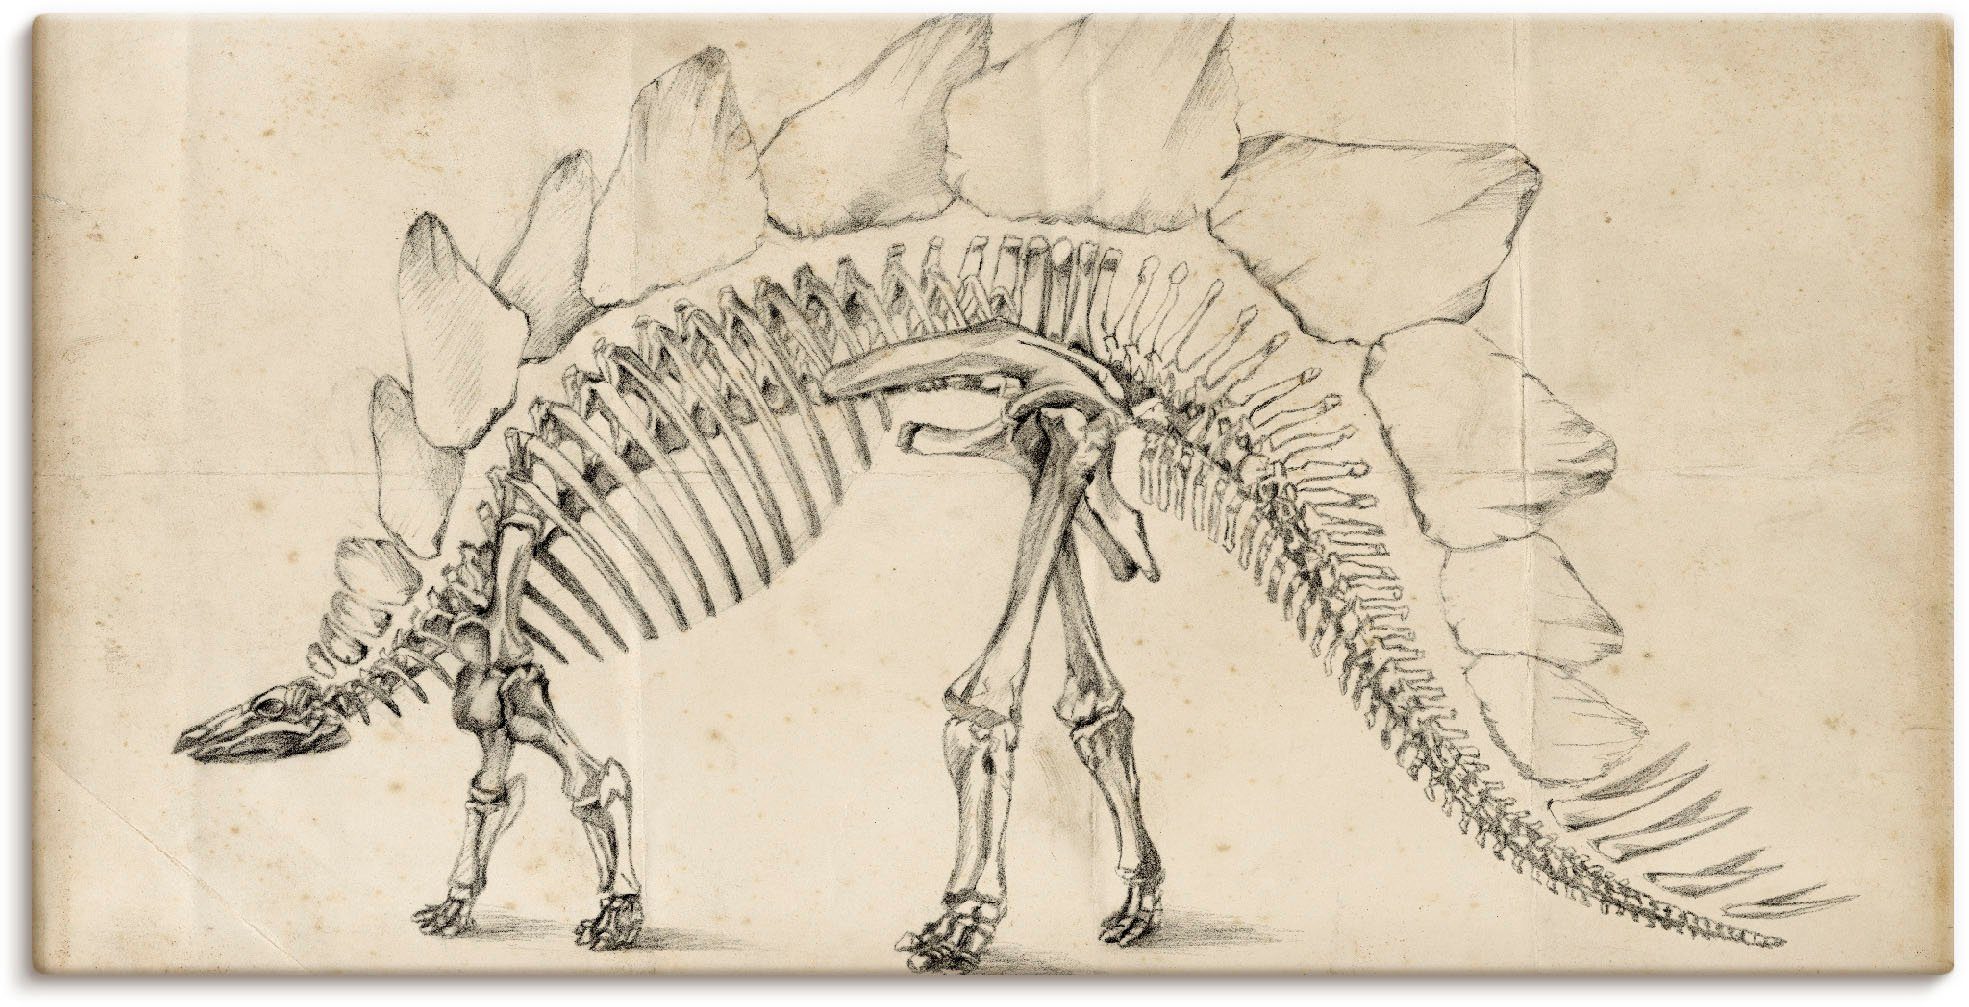 Artland Artprint Dinosaurus leer III in vele afmetingen & productsoorten - artprint van aluminium / artprint voor buiten, artprint op linnen, poster, muursticker / wandfolie ook ge